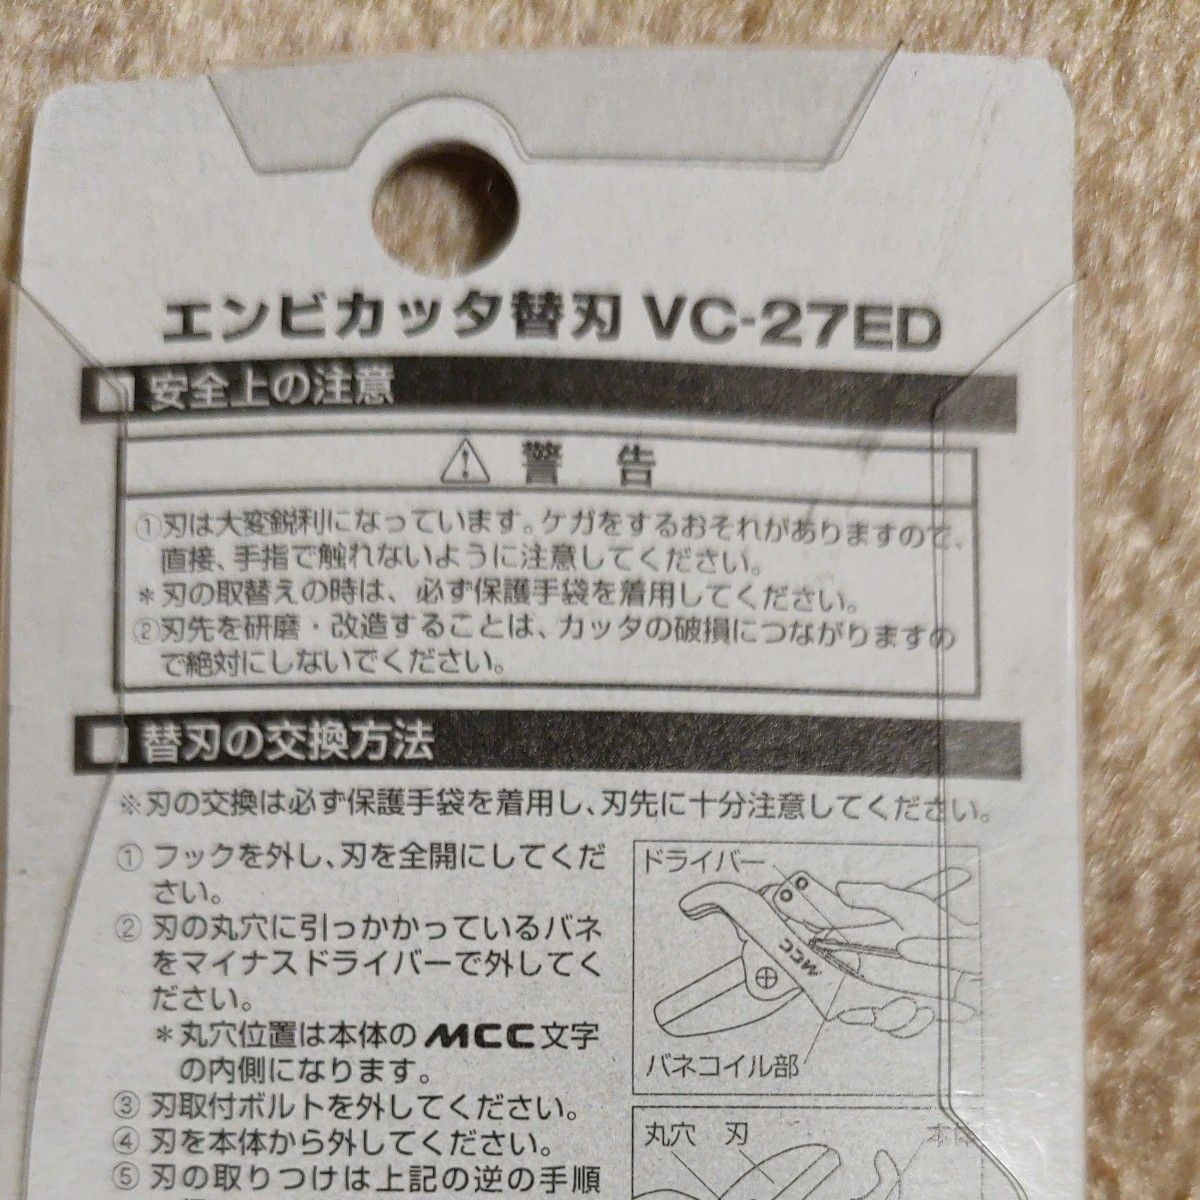 MCC エンビカッタ替刃 VCE27ED VCE0327 最大切断能力φ27mm